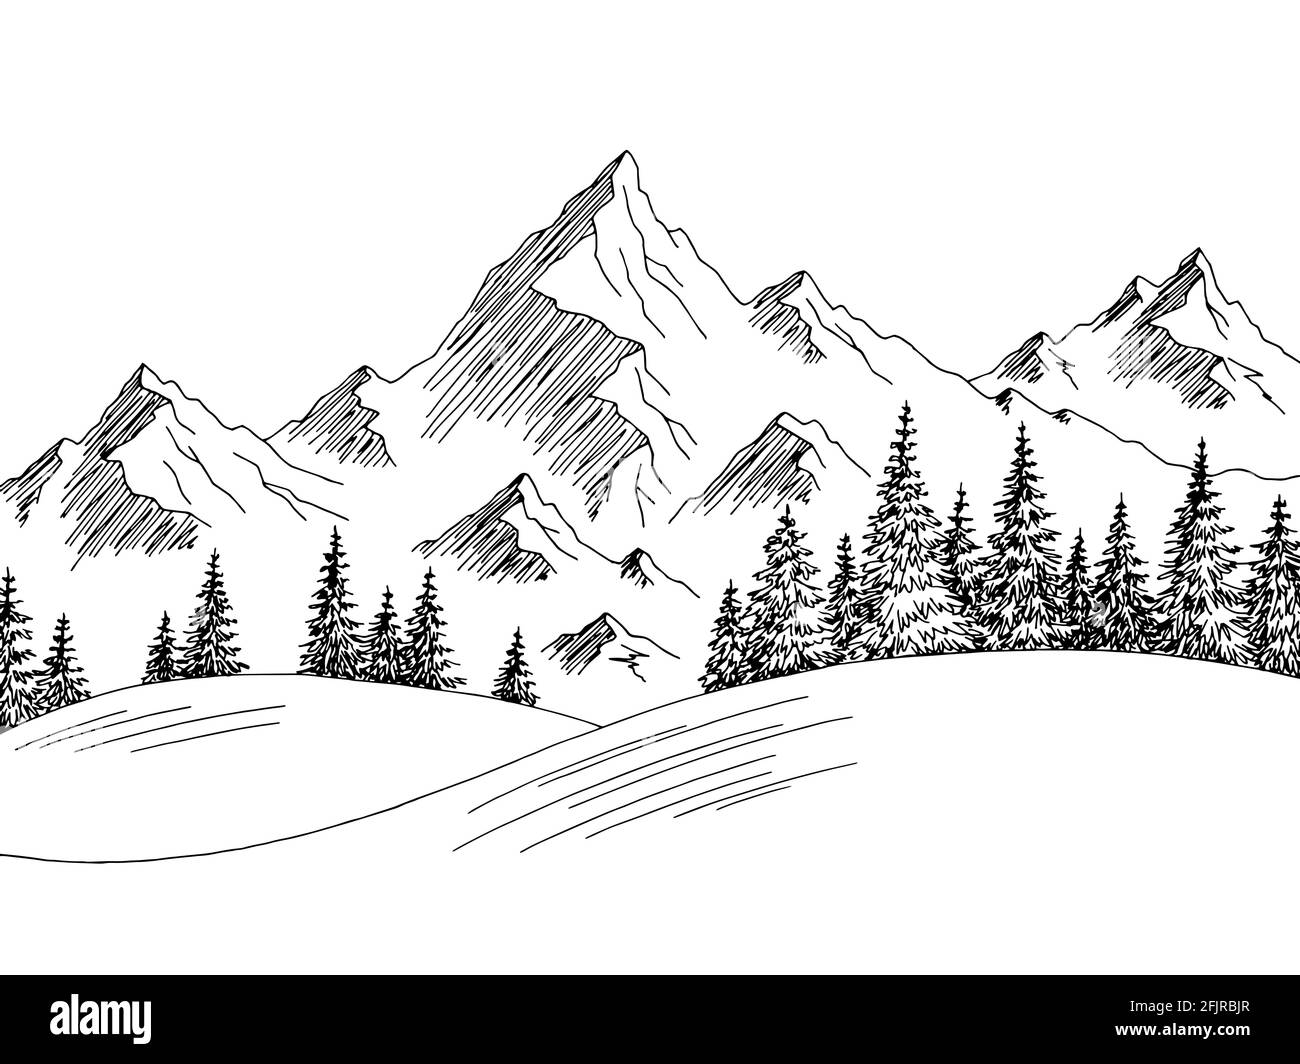 Berg Hügel Grafik schwarz weiß Landschaft Skizze Illustration Vektor Stock Vektor